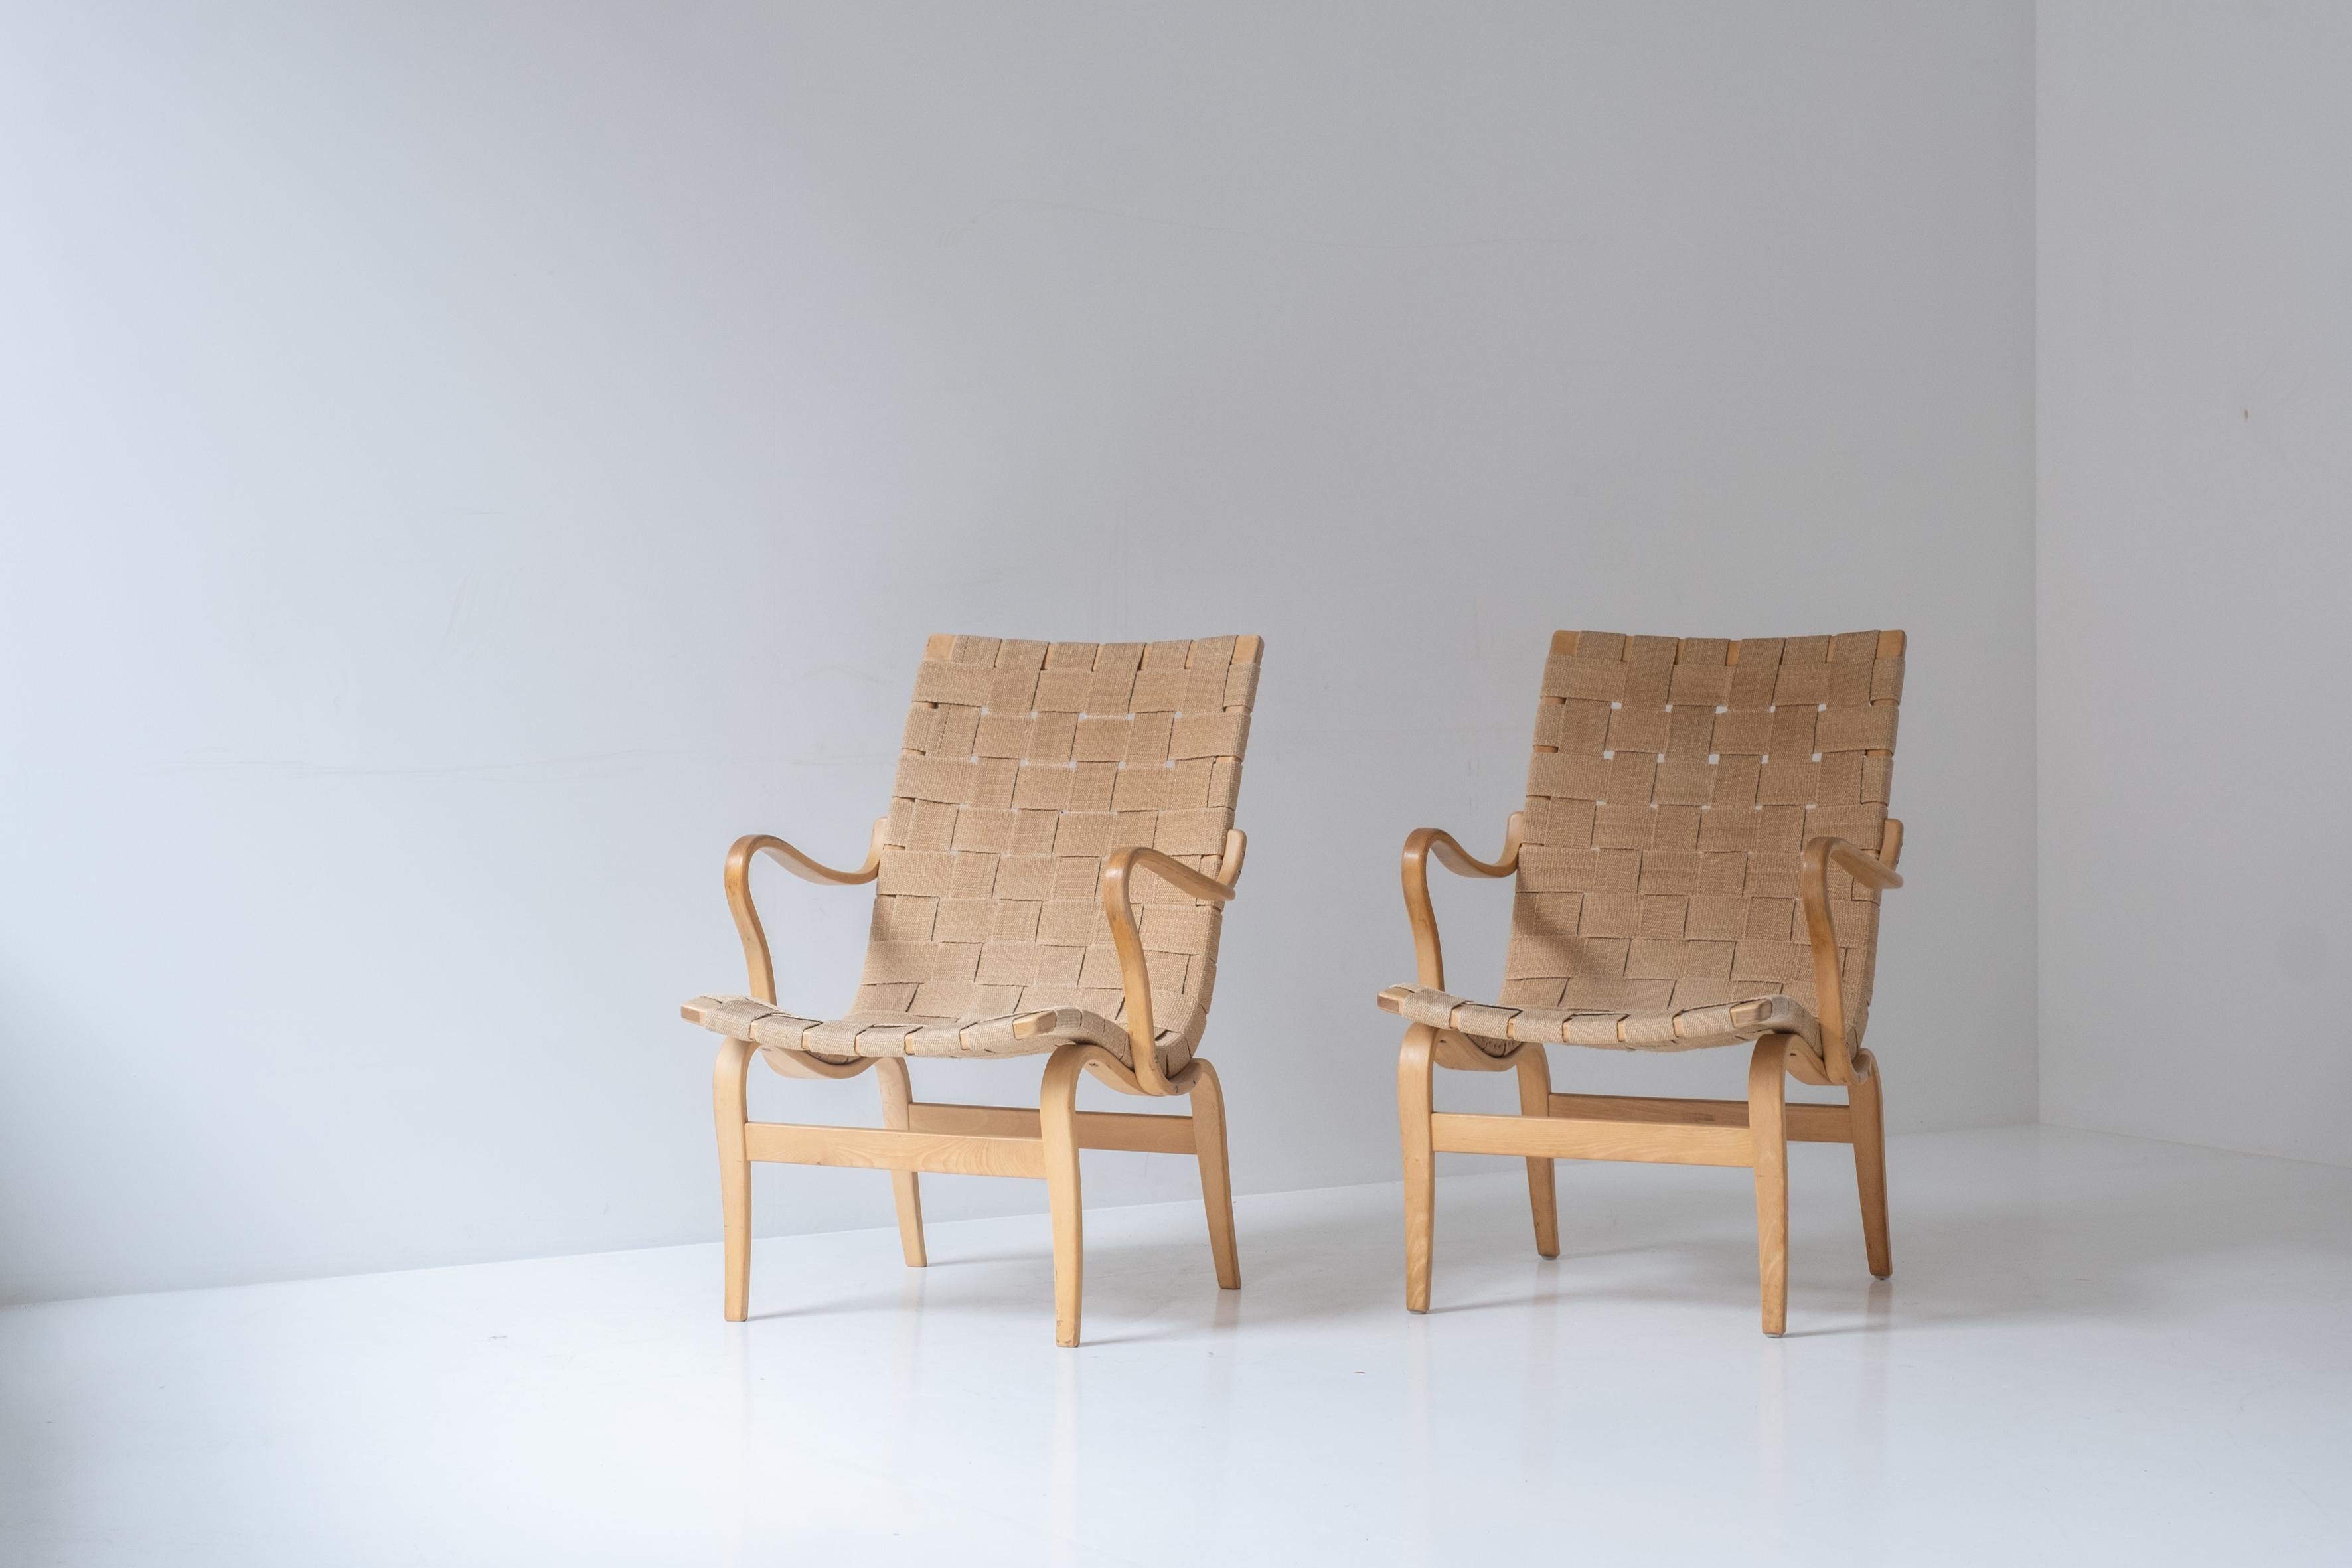 Beistellstuhl 'Eva' von Bruno Mathsson für Karl Mathsson, Schweden 1960er Jahre. Dieses Exemplar besteht aus einem massiven Birkenholzrahmen und hat den originalen geflochtenen Sitz und Rücken. Wenige Gebrauchsspuren, insgesamt in einem sehr guten